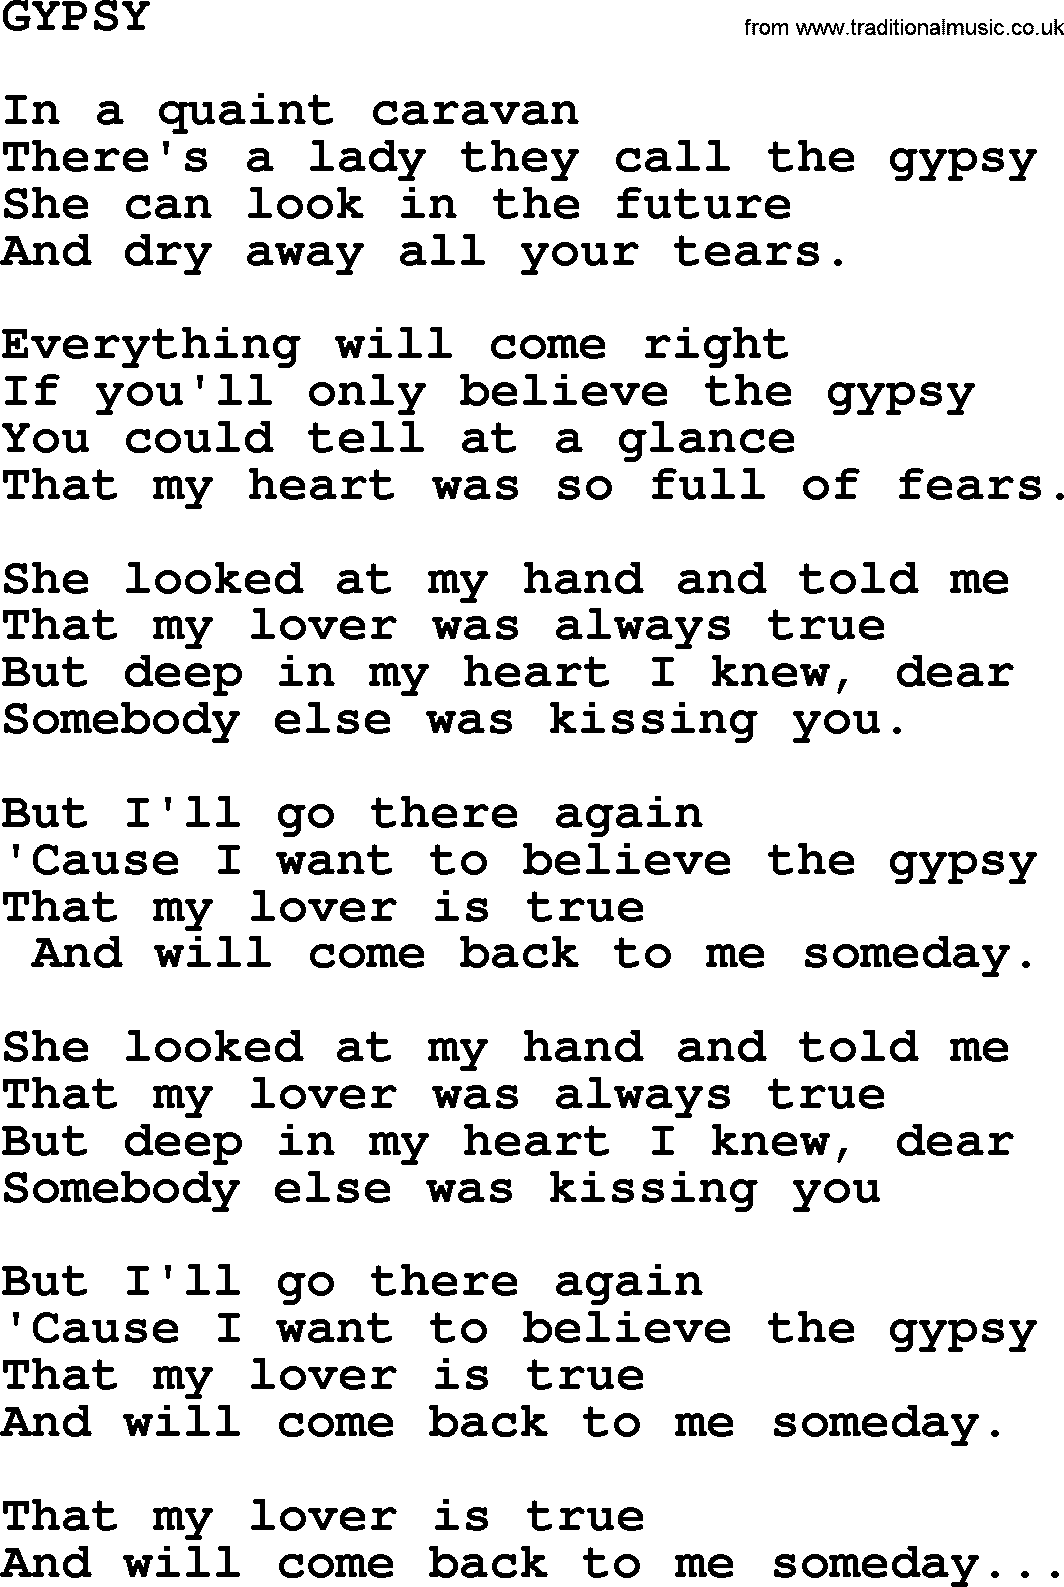 Merle Haggard song: Gypsy, lyrics.